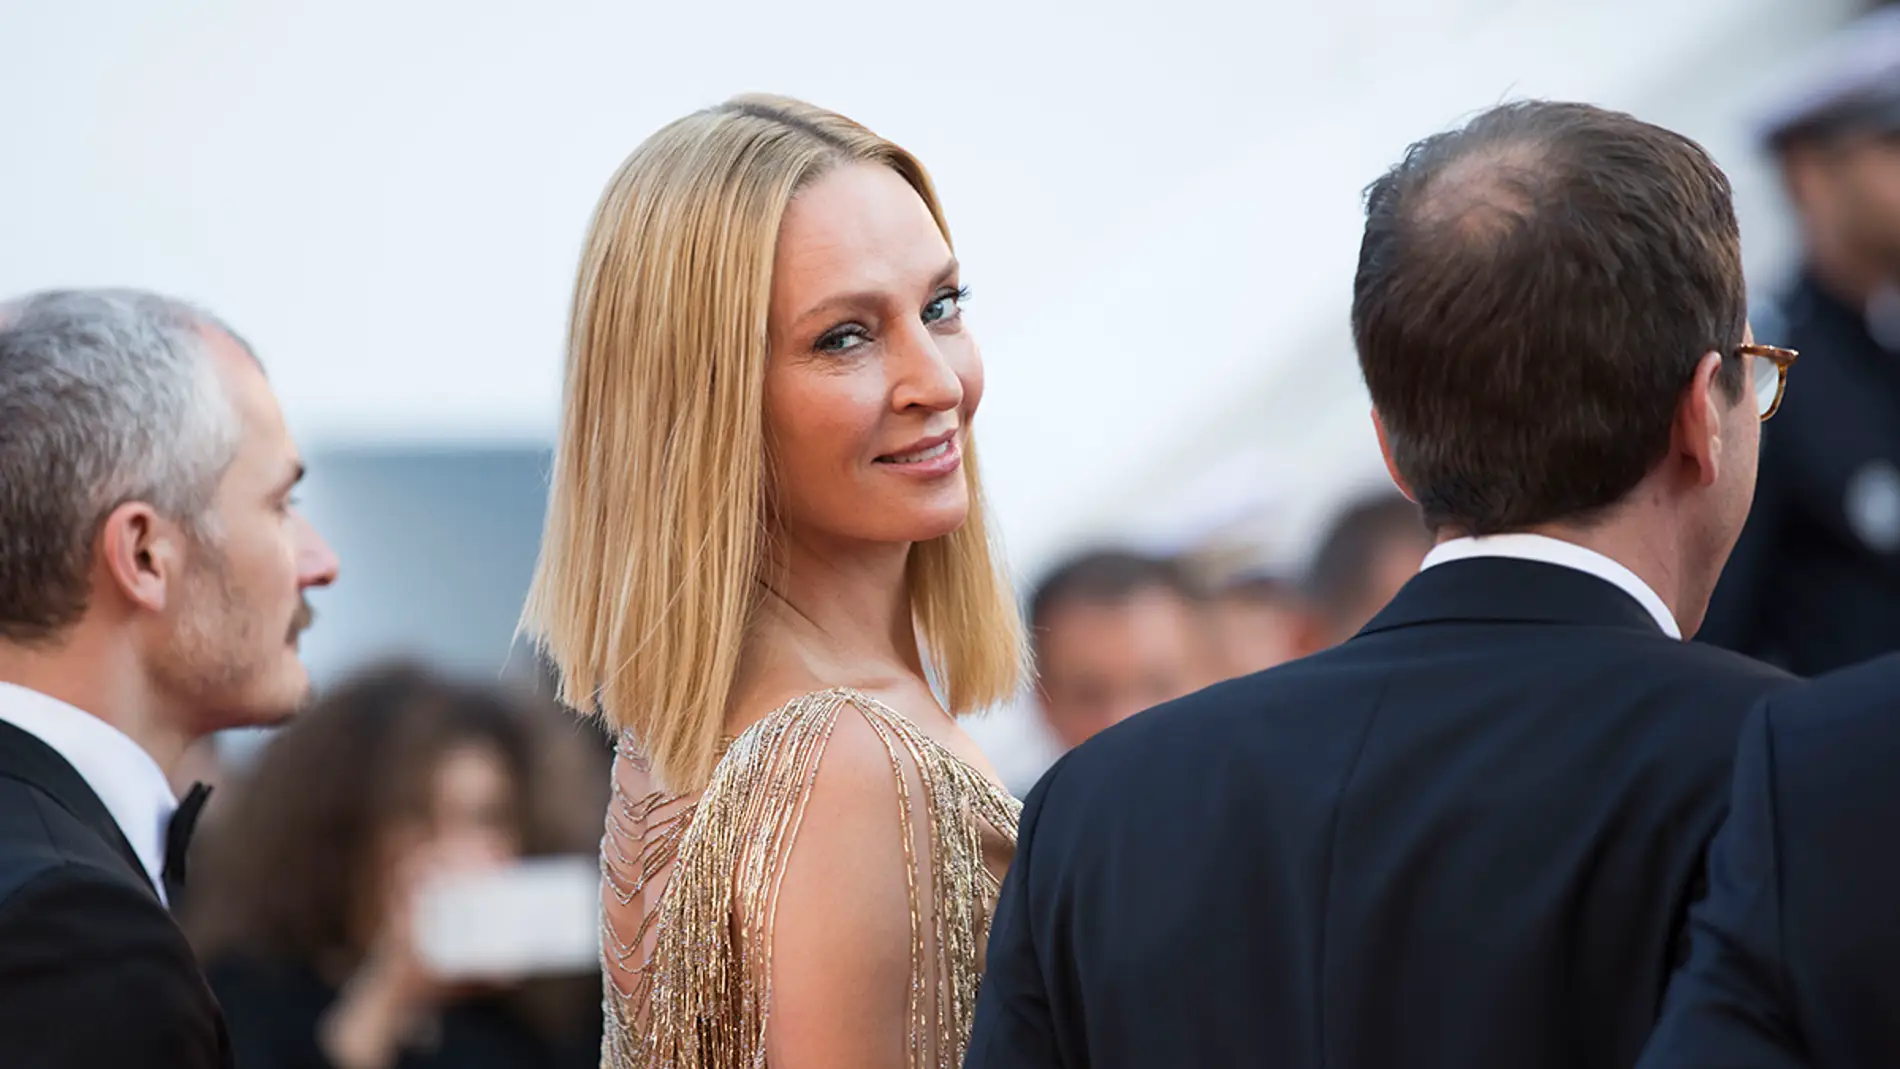 Uma Thurman en el Festival de Cannes